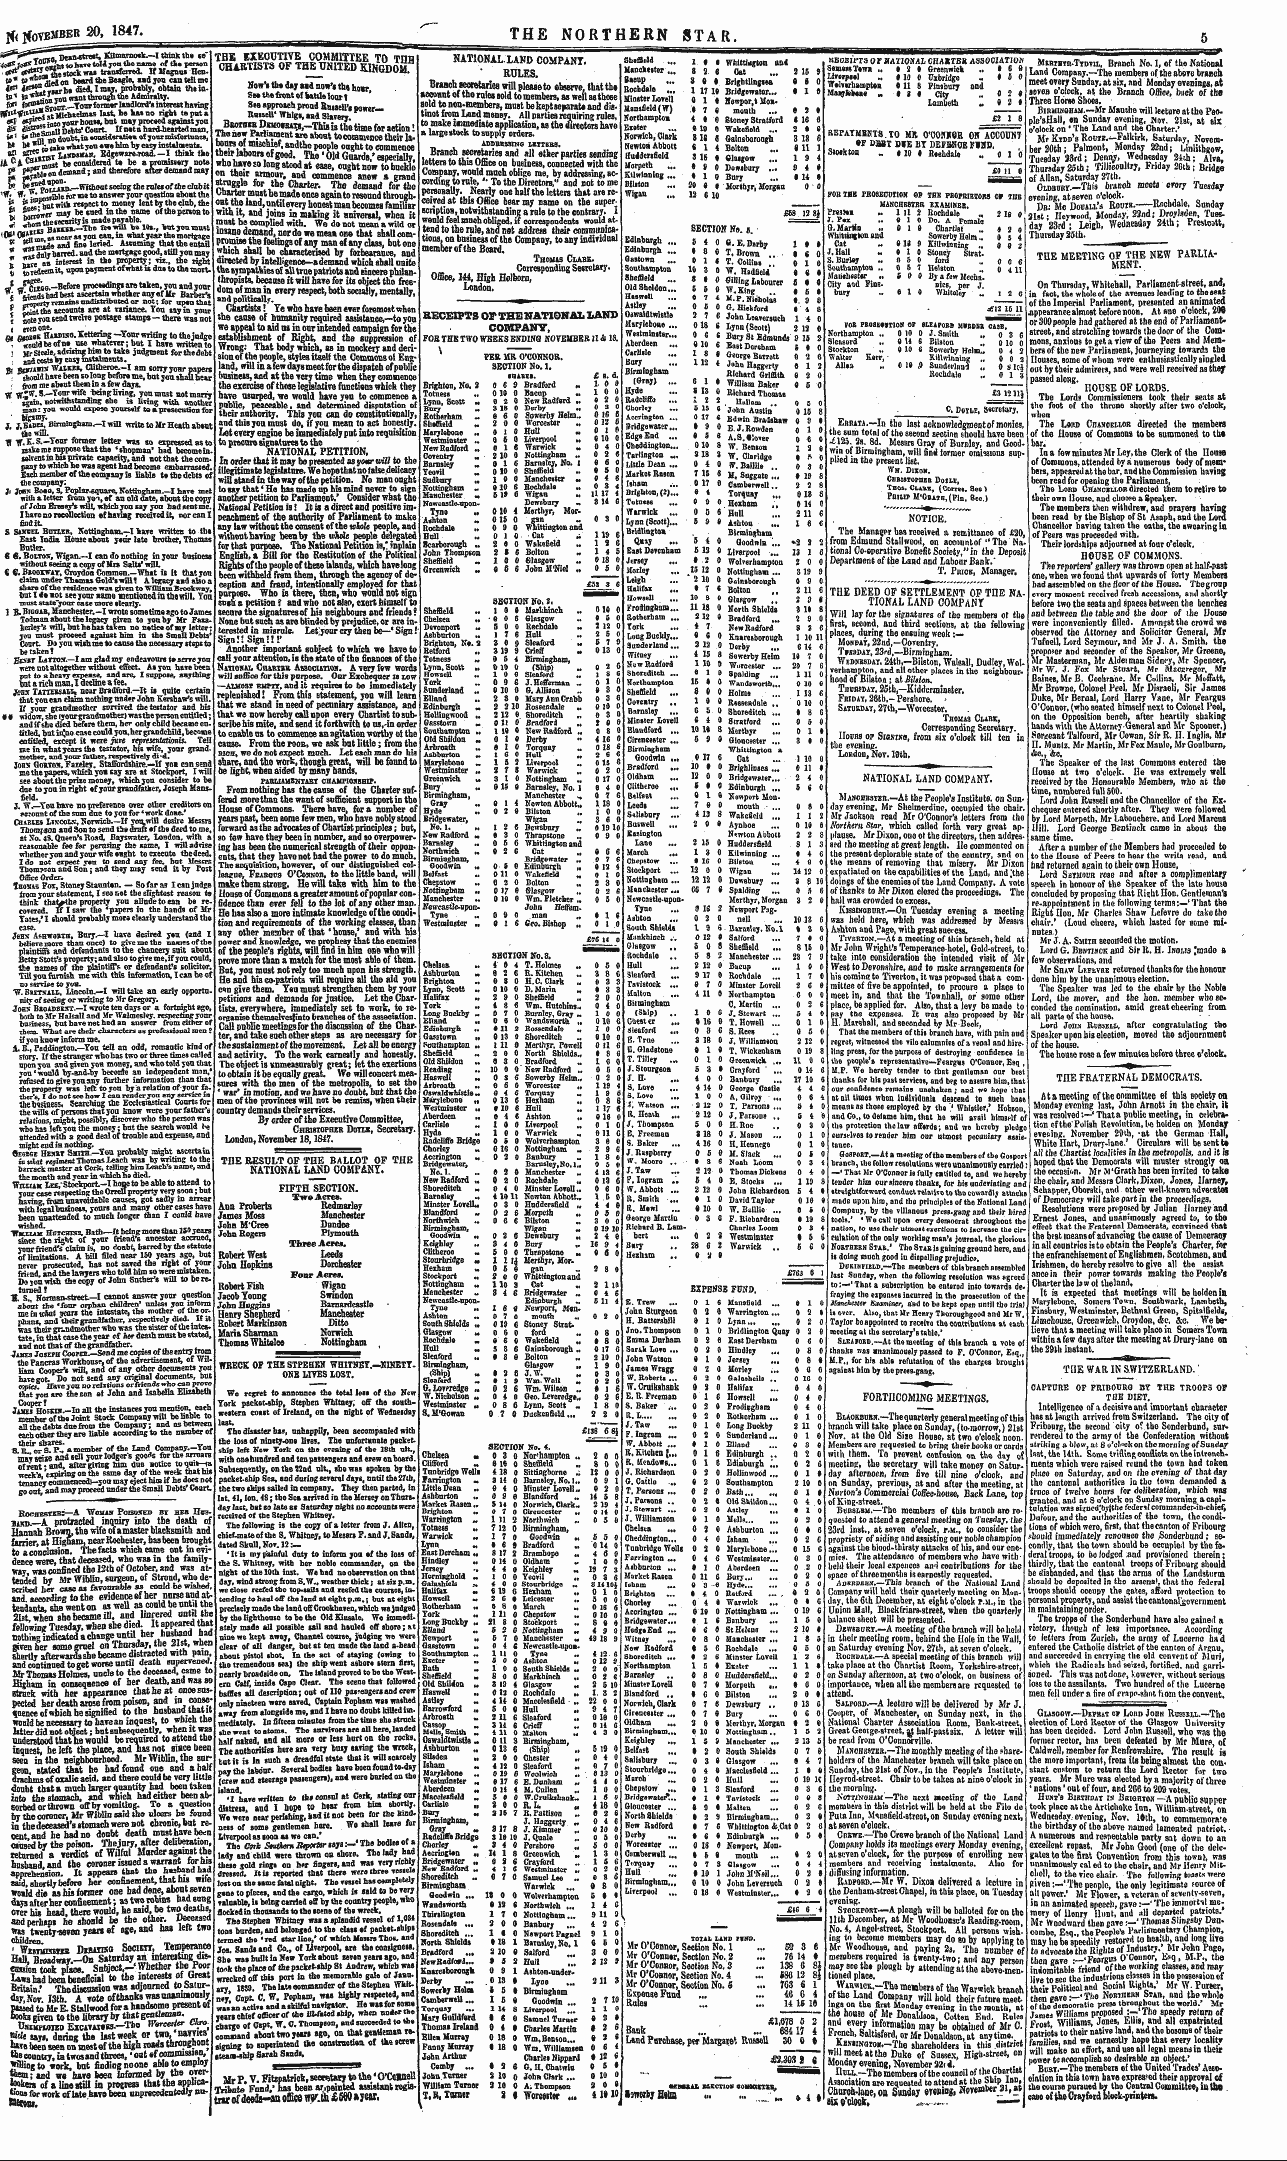 Northern Star (1837-1852): jS F Y, 3rd edition - Miscbllanious. A. Four Acbb Shabkboldee ...